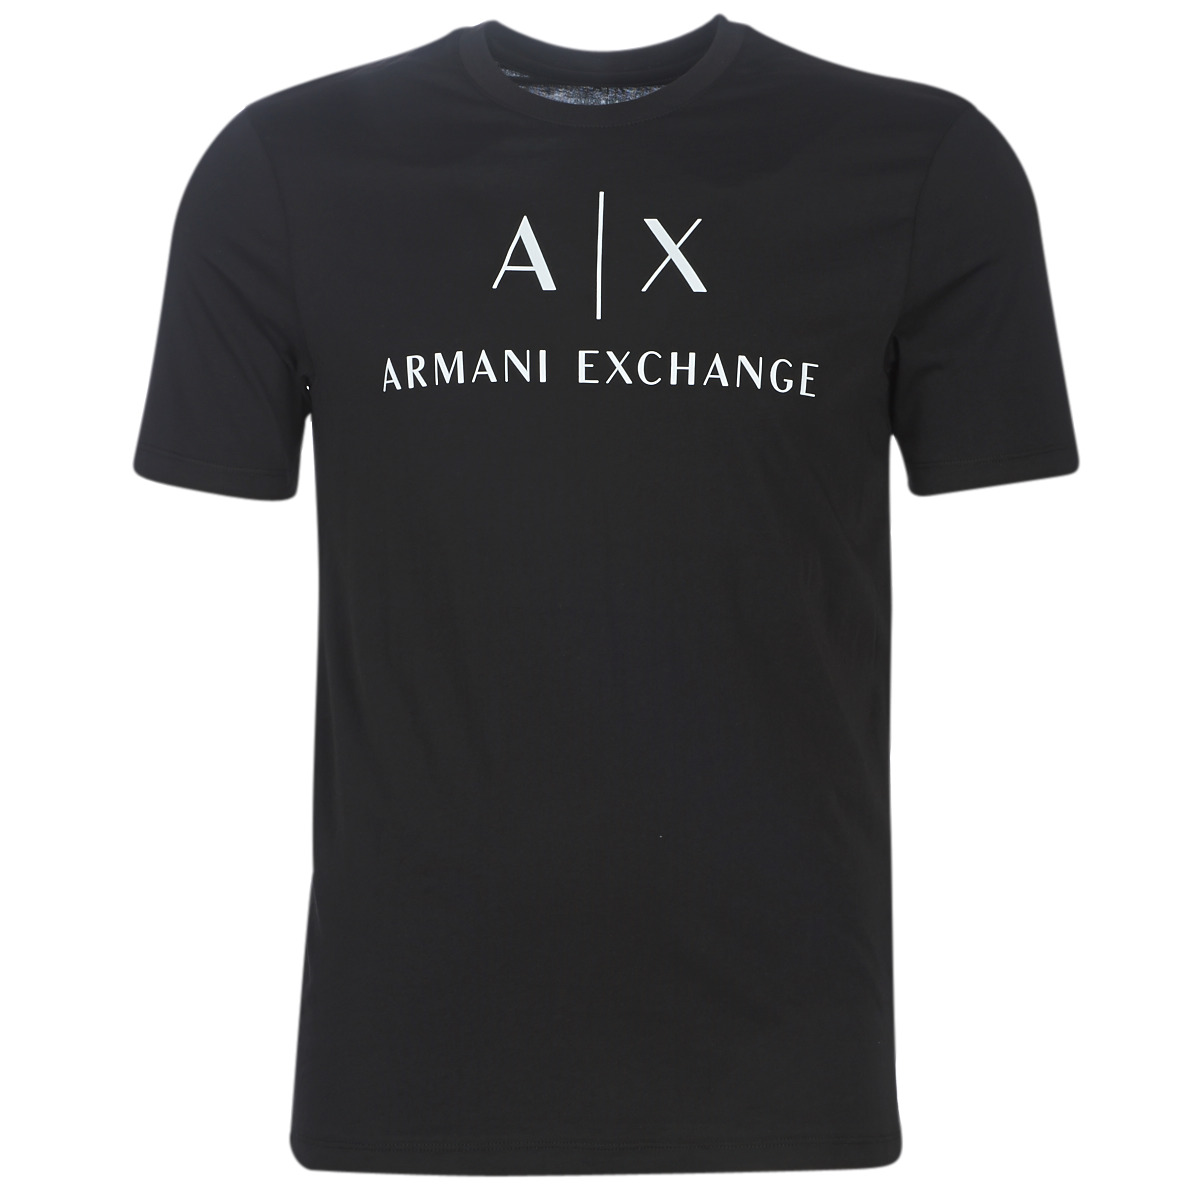 armani exchange t shirt uk